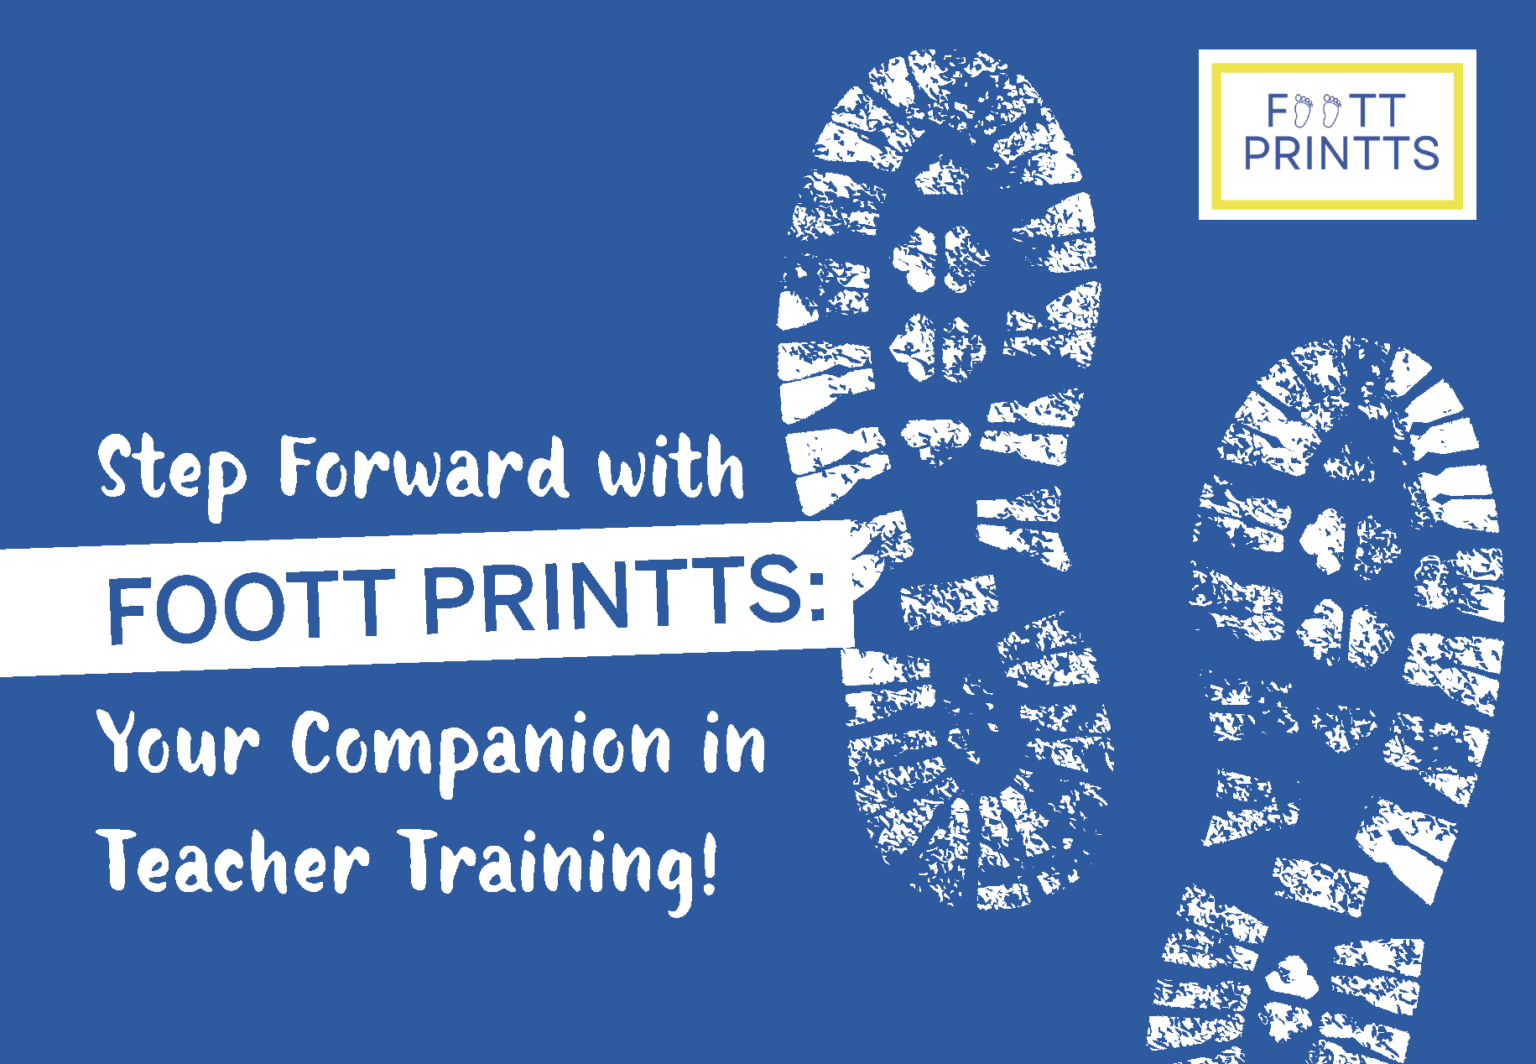 FOOTT-PRINTTS_Postkarten_Page_5-1536x1064